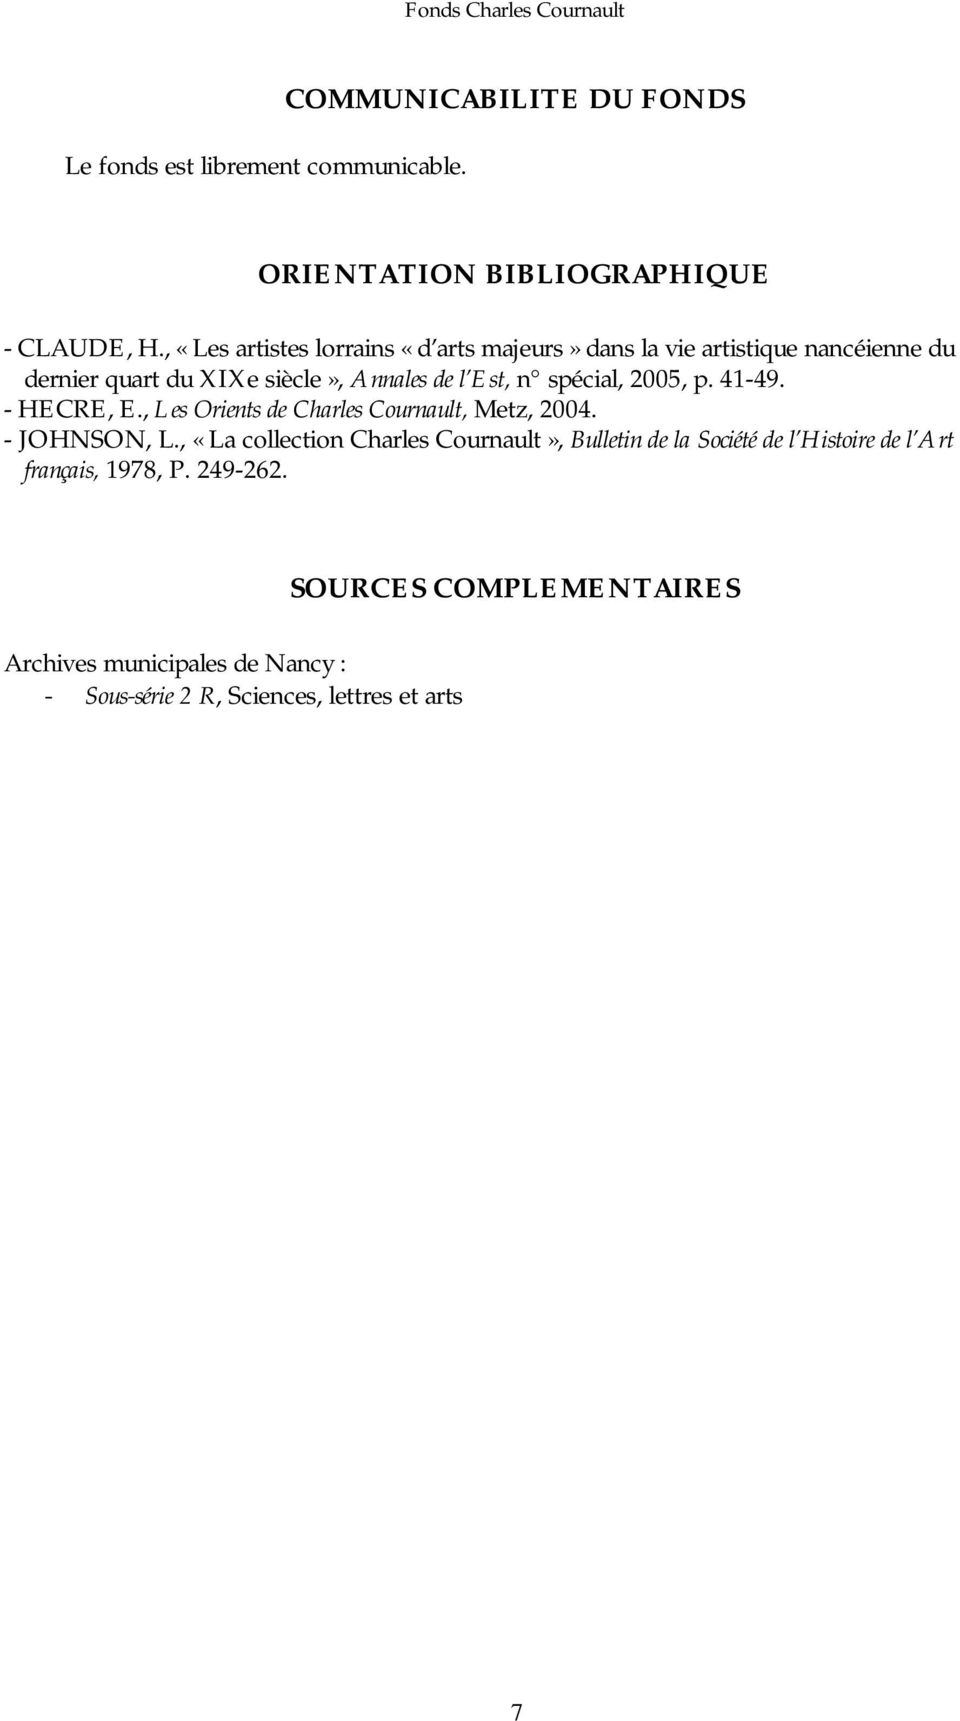 spécial, 2005, p. 41-49. - HECRE, E., Les Orients de Charles Cournault, Metz, 2004. - JOHNSON, L.